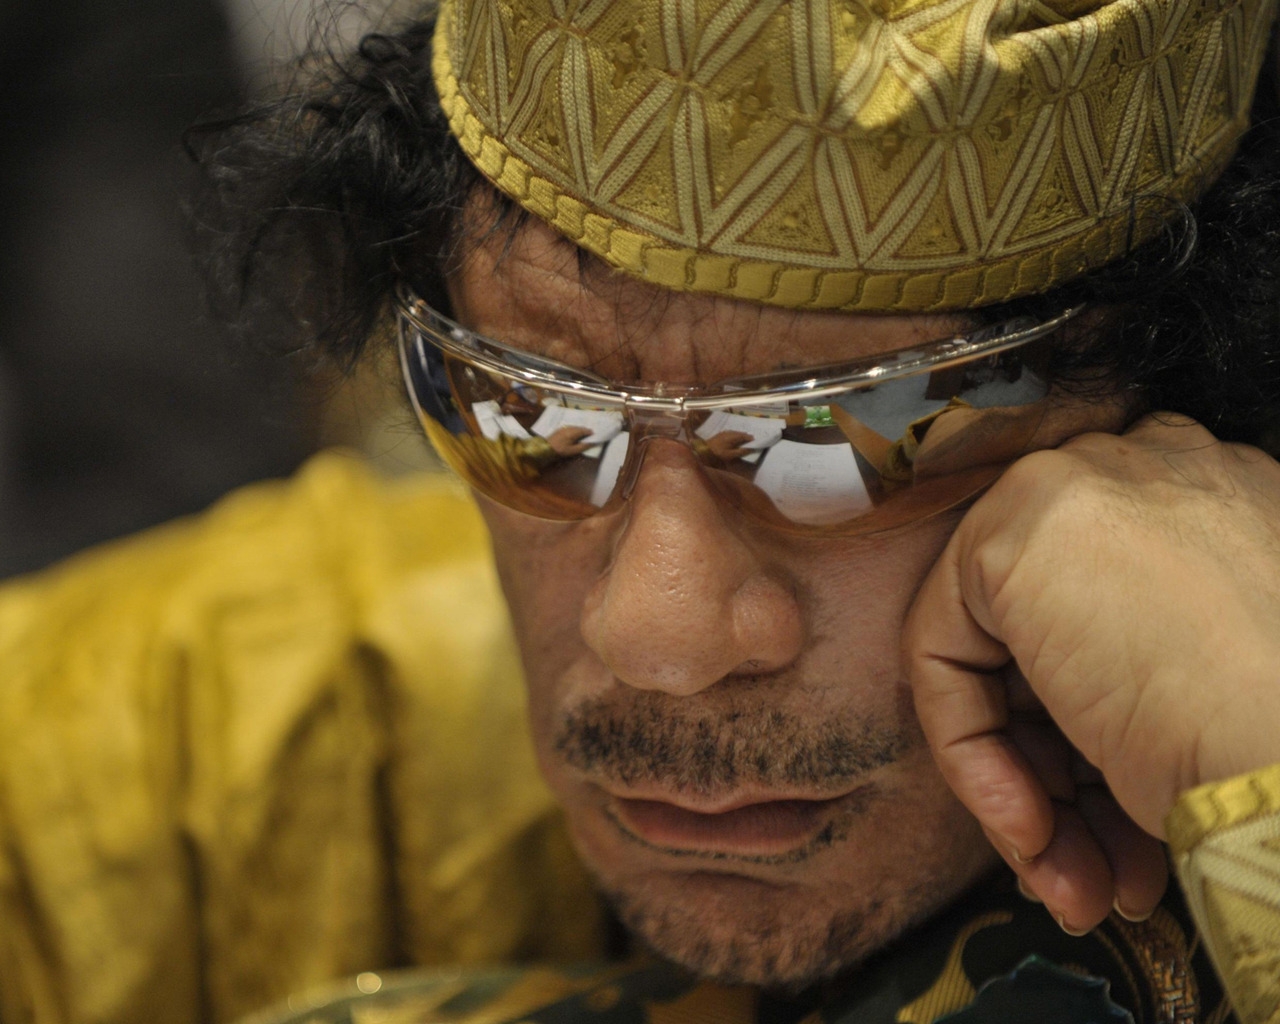 Muammar al Gaddafi for 1280 x 1024 resolution